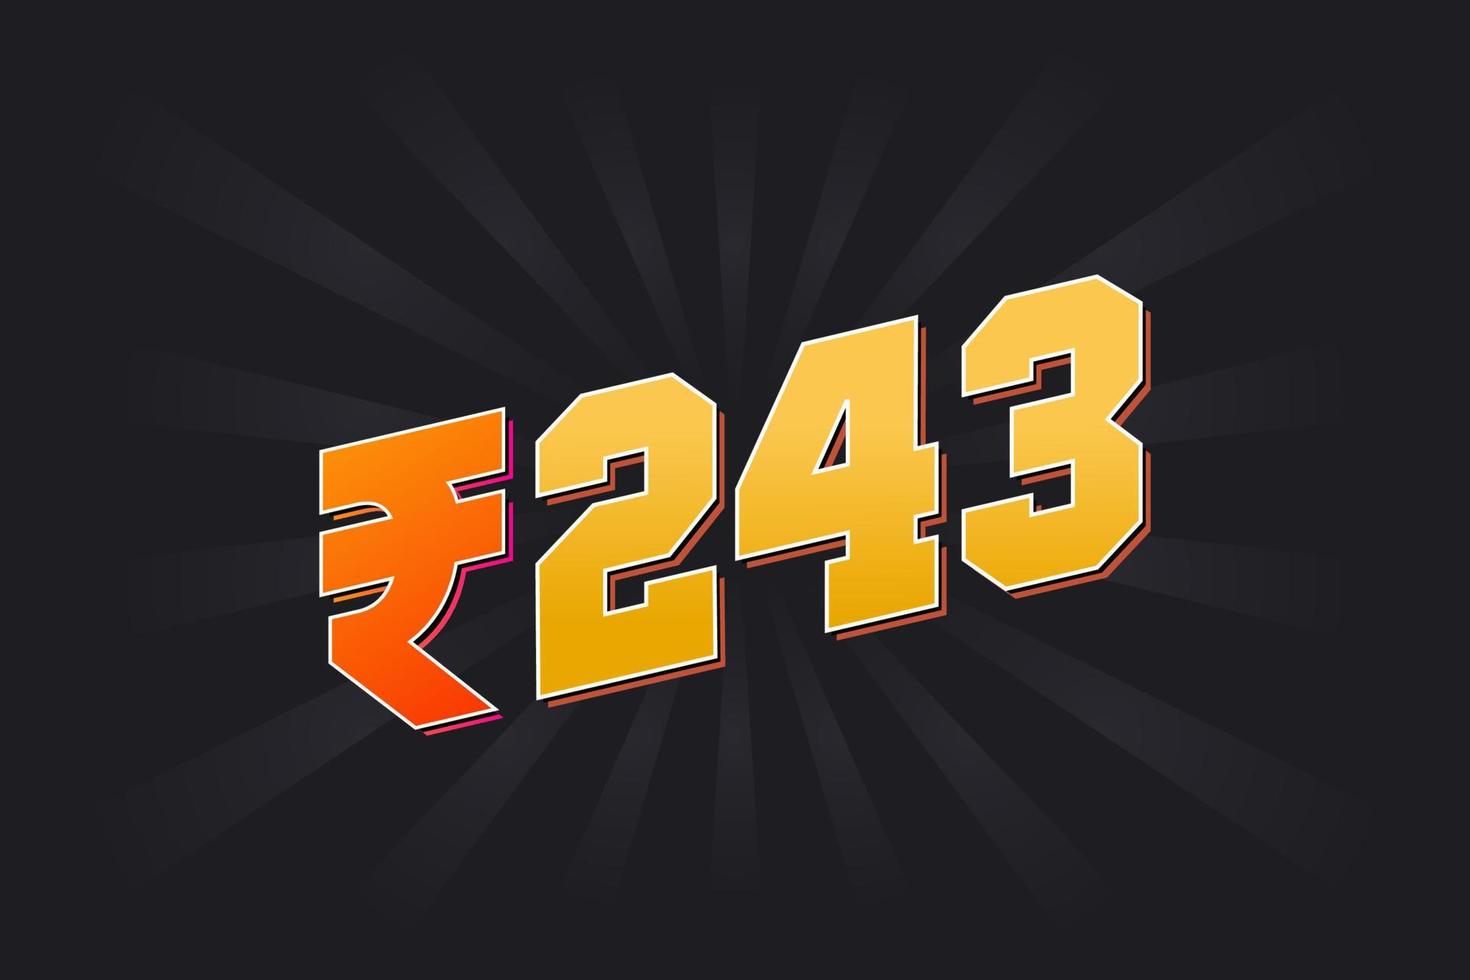 Image vectorielle de 243 roupies indiennes. 243 roupie symbole texte en gras illustration vectorielle vecteur